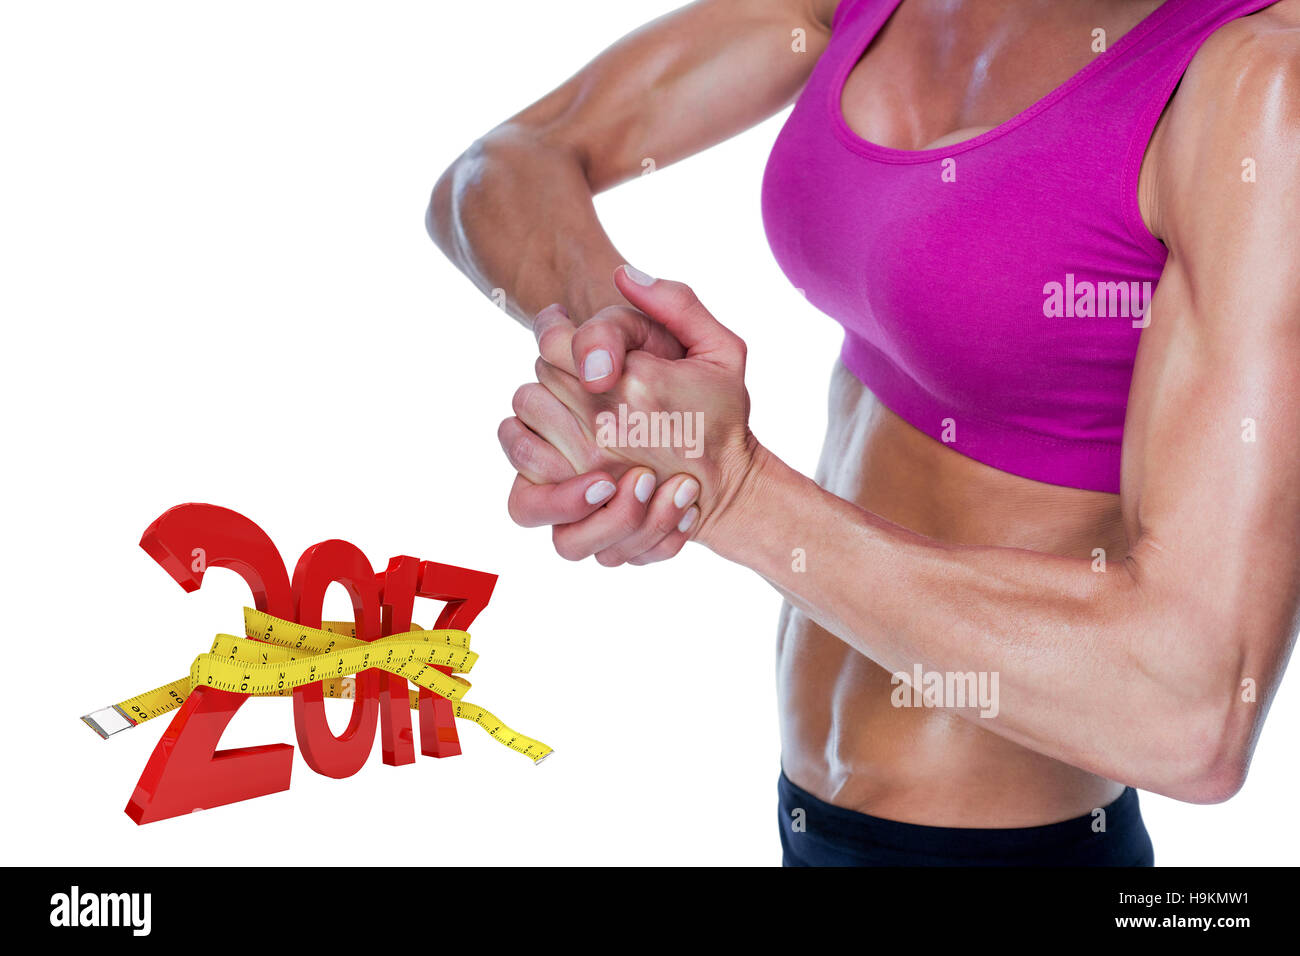 3D'immagine composita di bodybuilder femminile in posa con le mani insieme Foto Stock